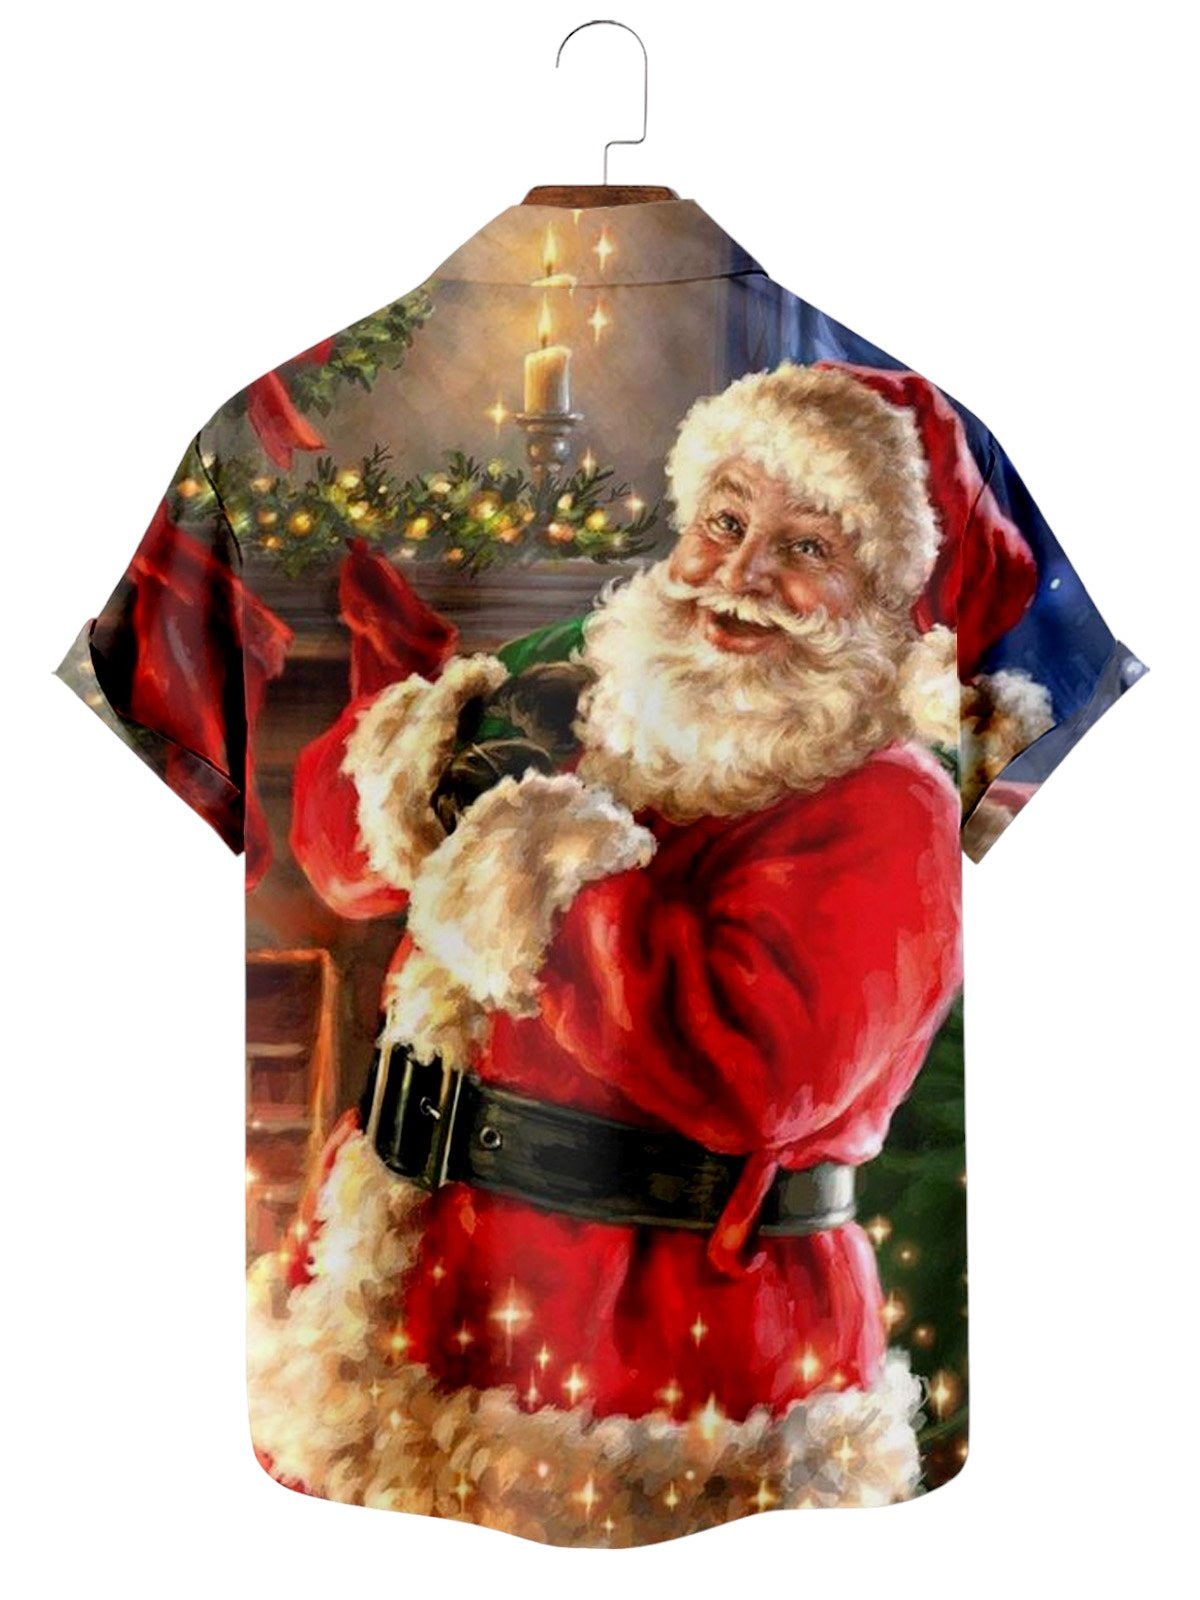 Festive Santa Print Short Sleeve Holiday Shirt